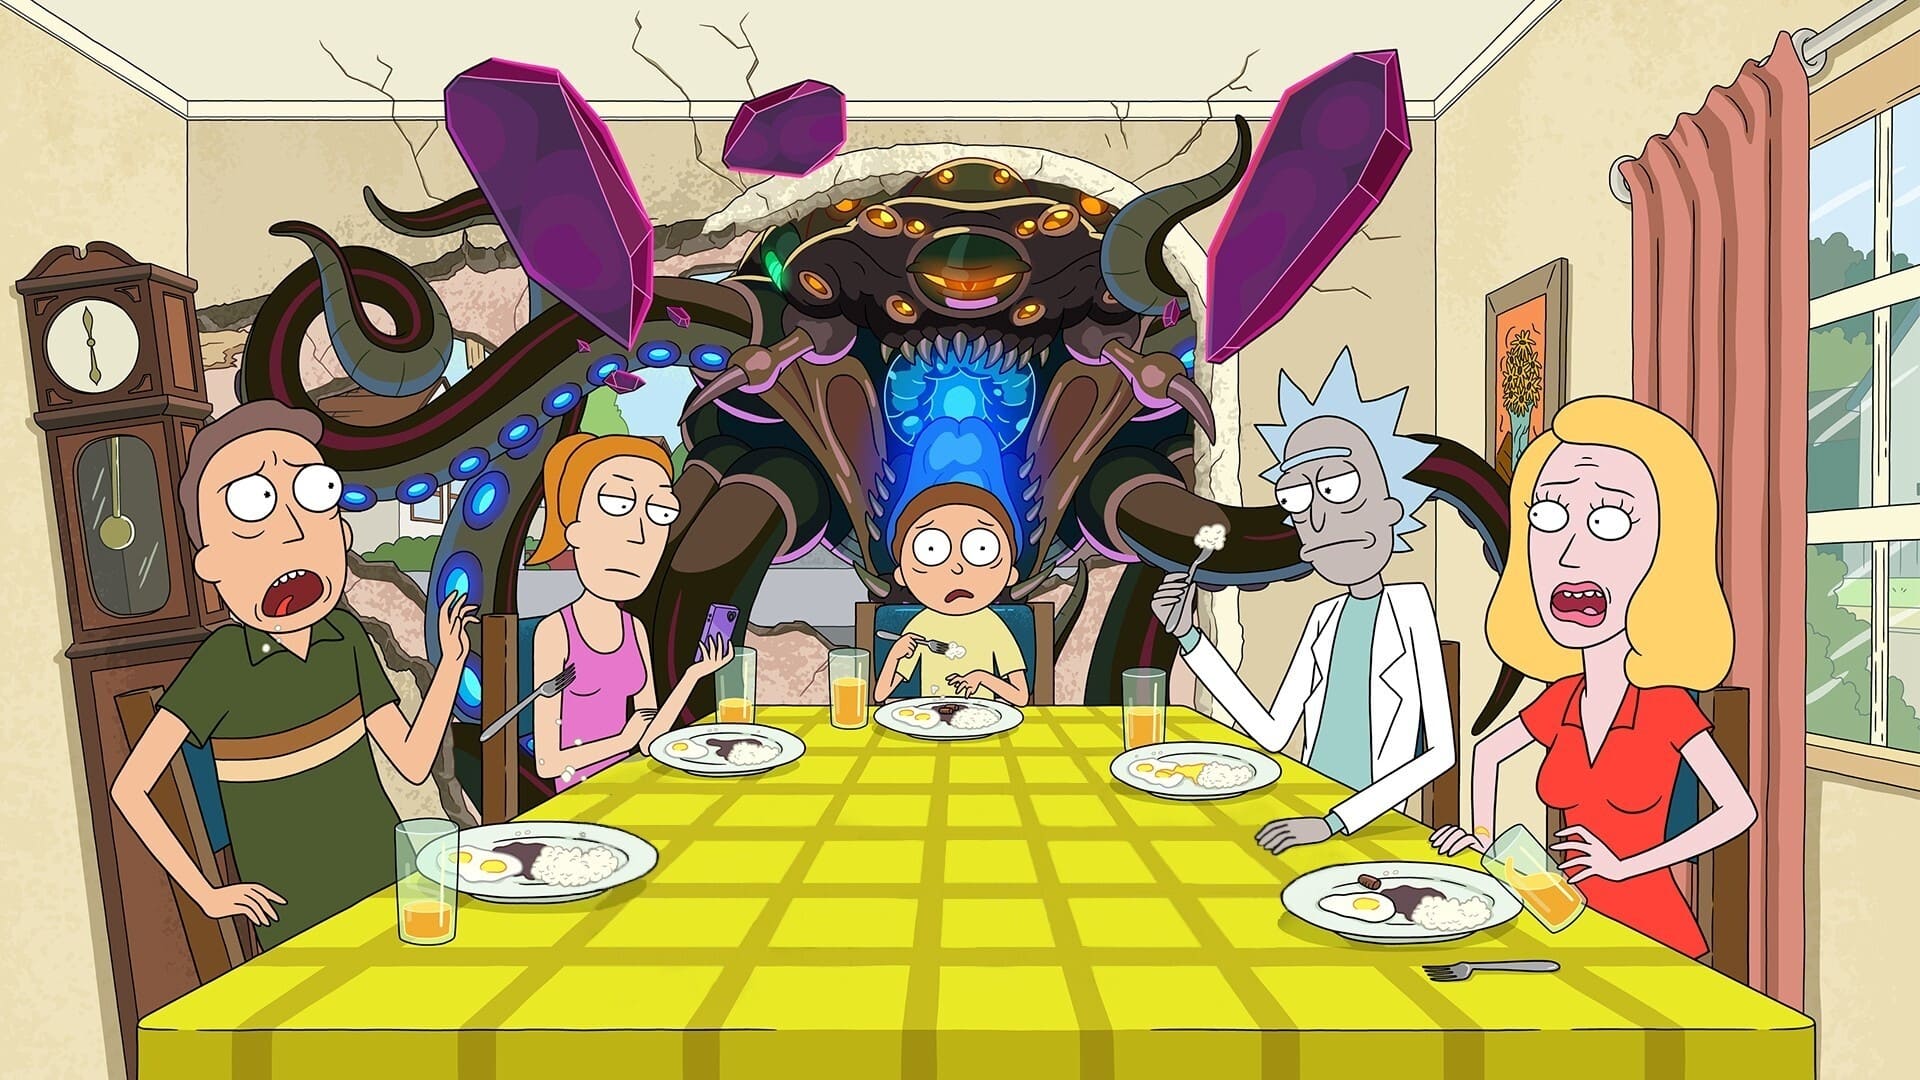 ริกและมอร์ตี้   Rick and Morty ออนไลน์โดยสมบูรณ์ในปี 2013